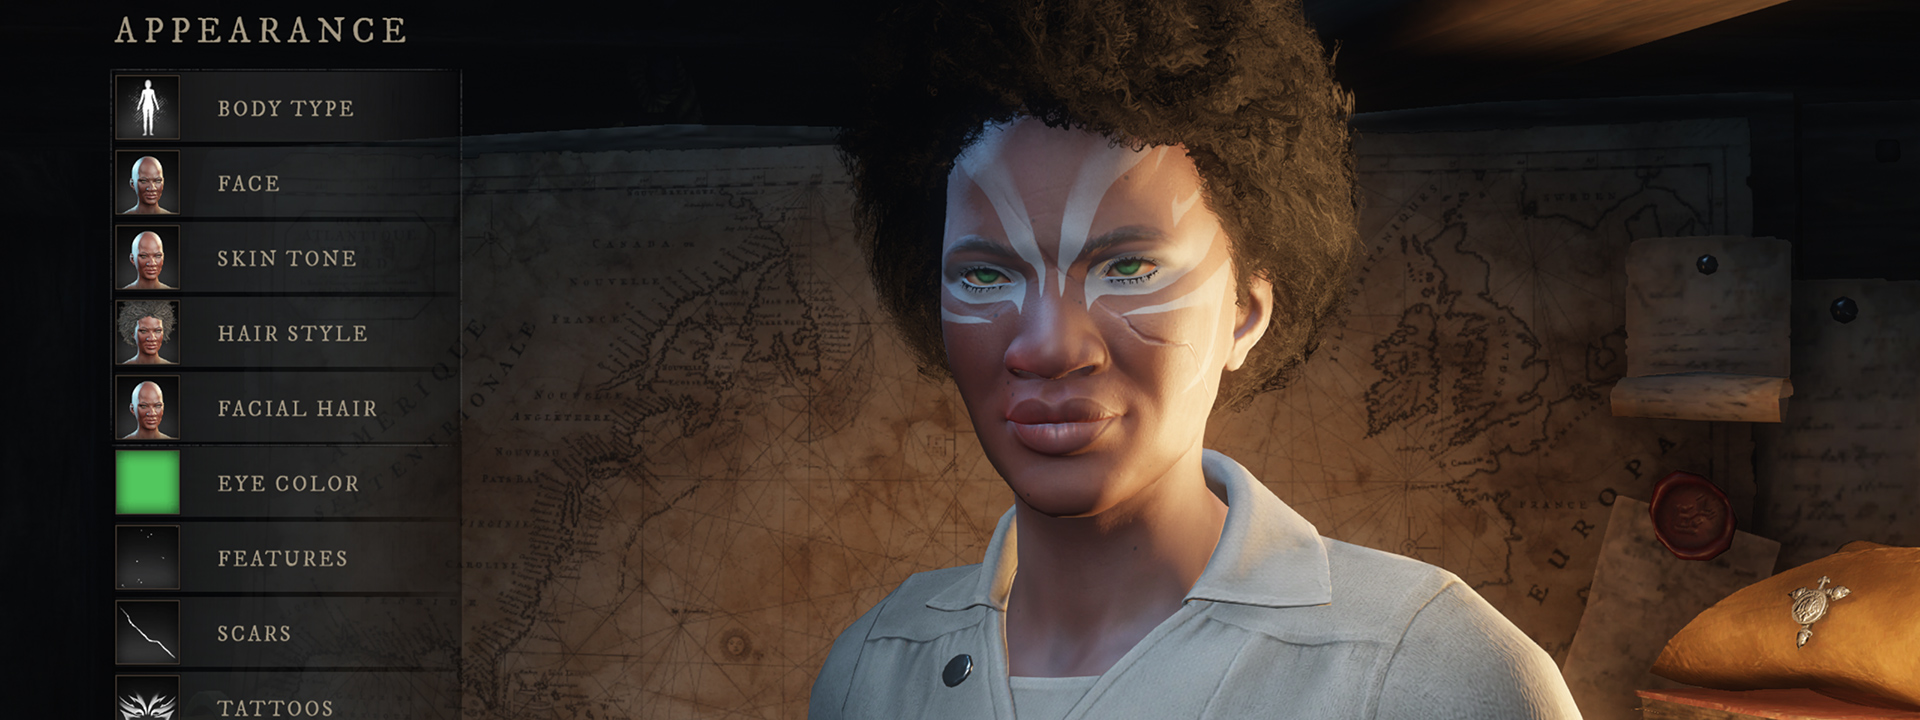 Una captura de pantalla de la interfaz de personalización de personajes, donde se ve a una persona de tez oscura y tatuajes de color azul claro alrededor de los ojos.